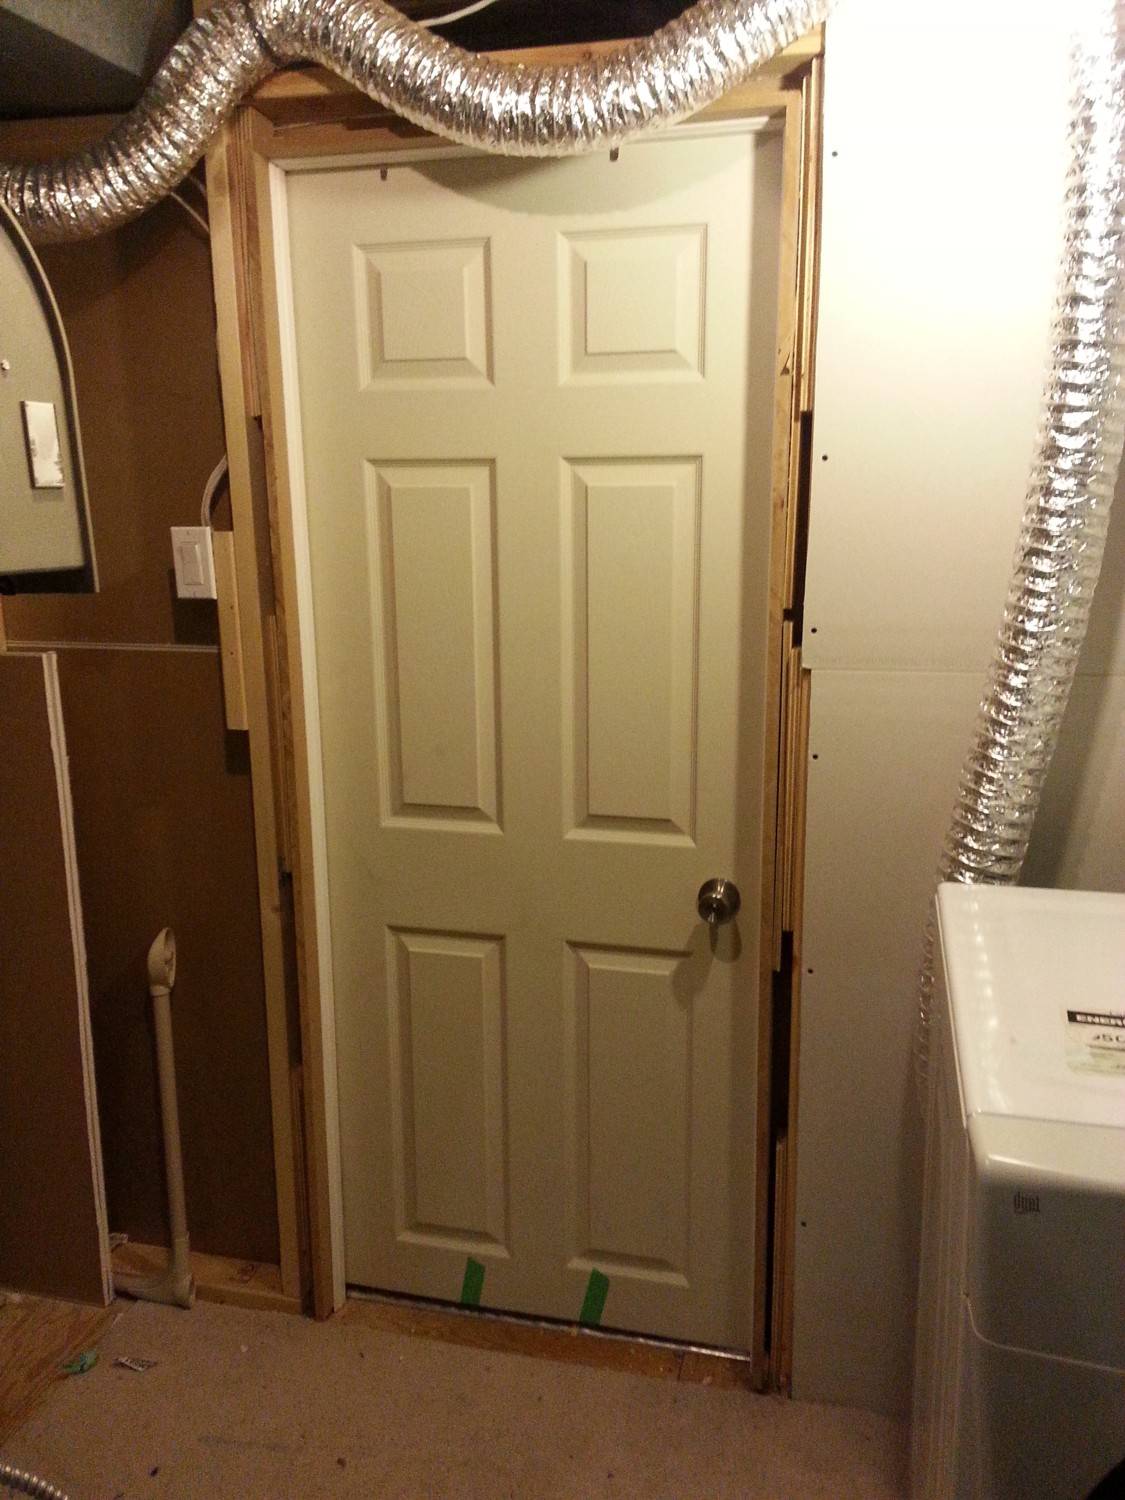 Door replaced